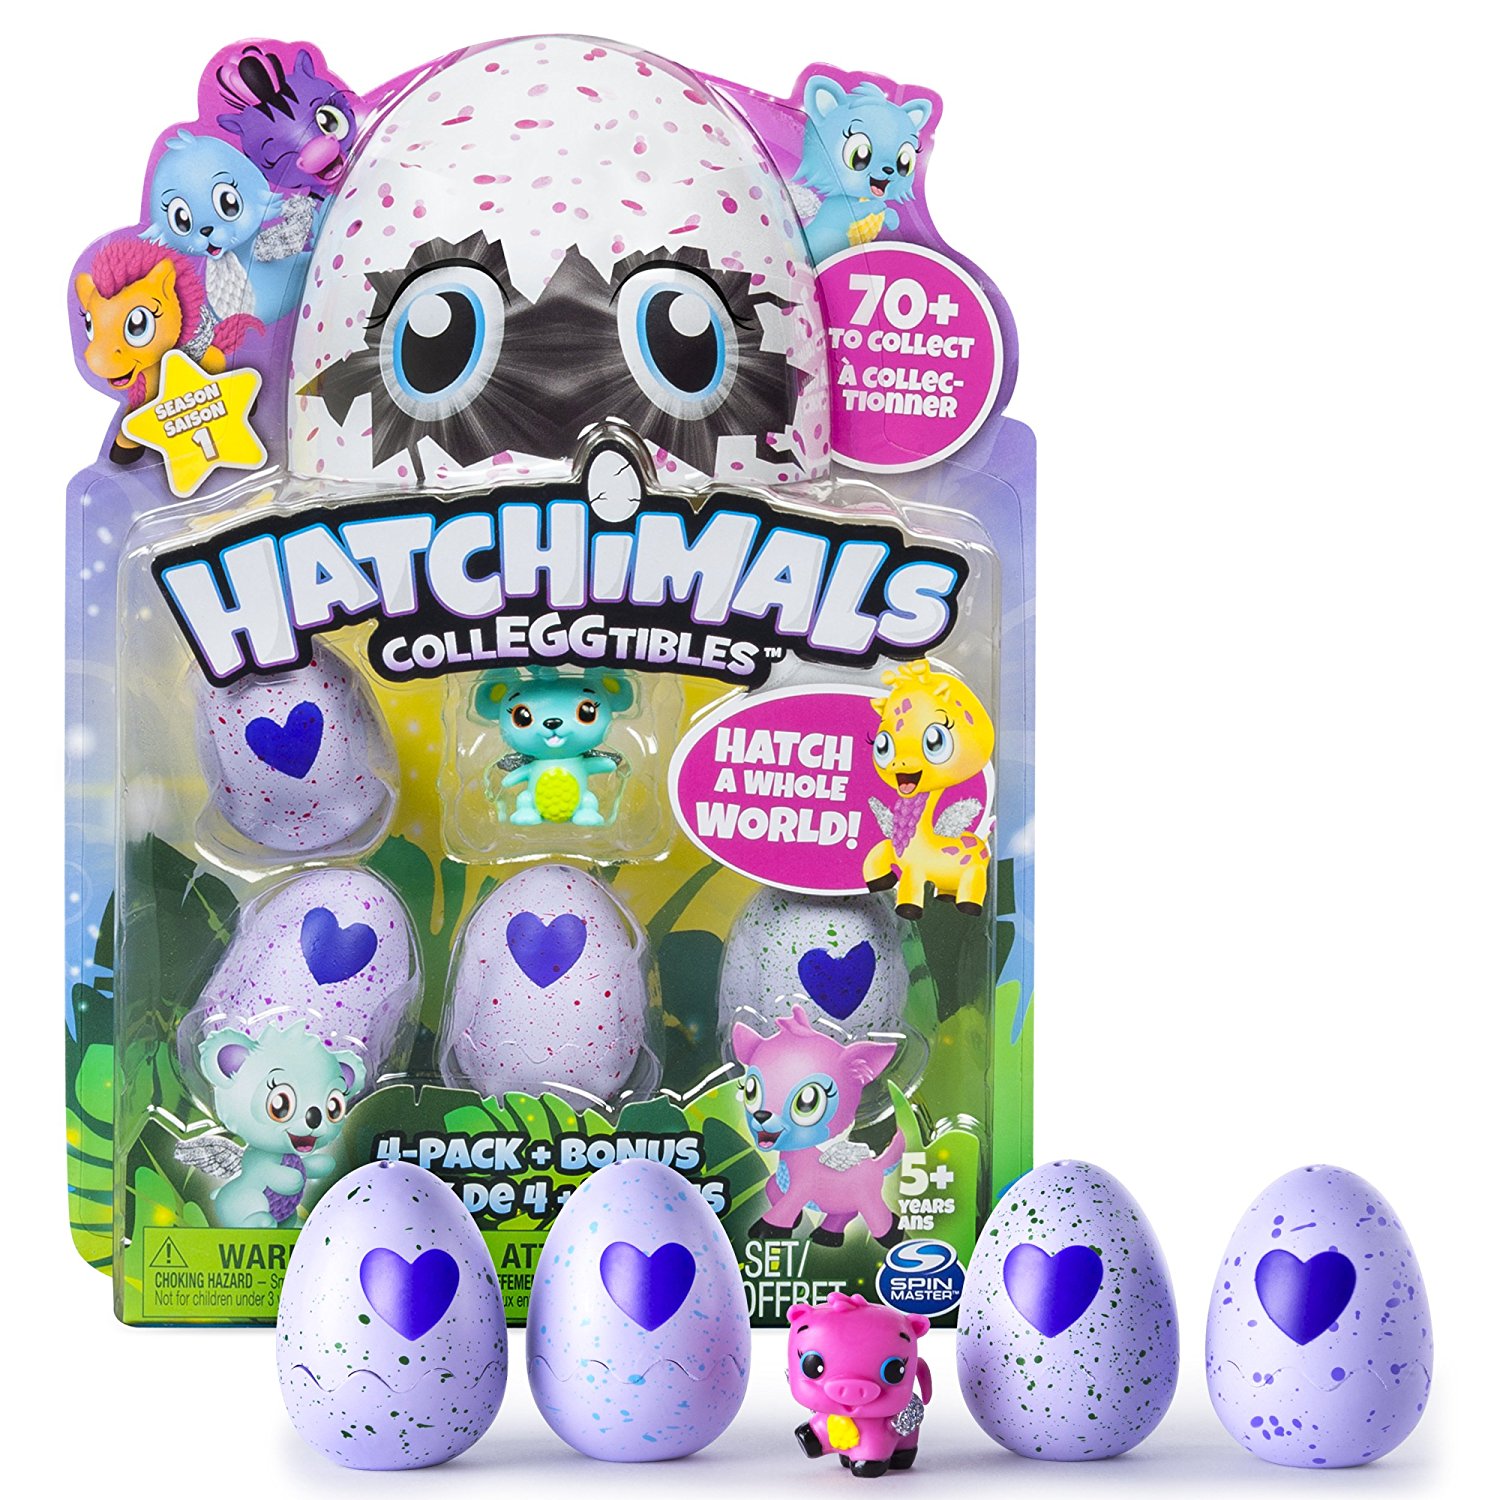 Hatchimals CollEGGtibles 4-Pack plus Bonus – Just $9.99!